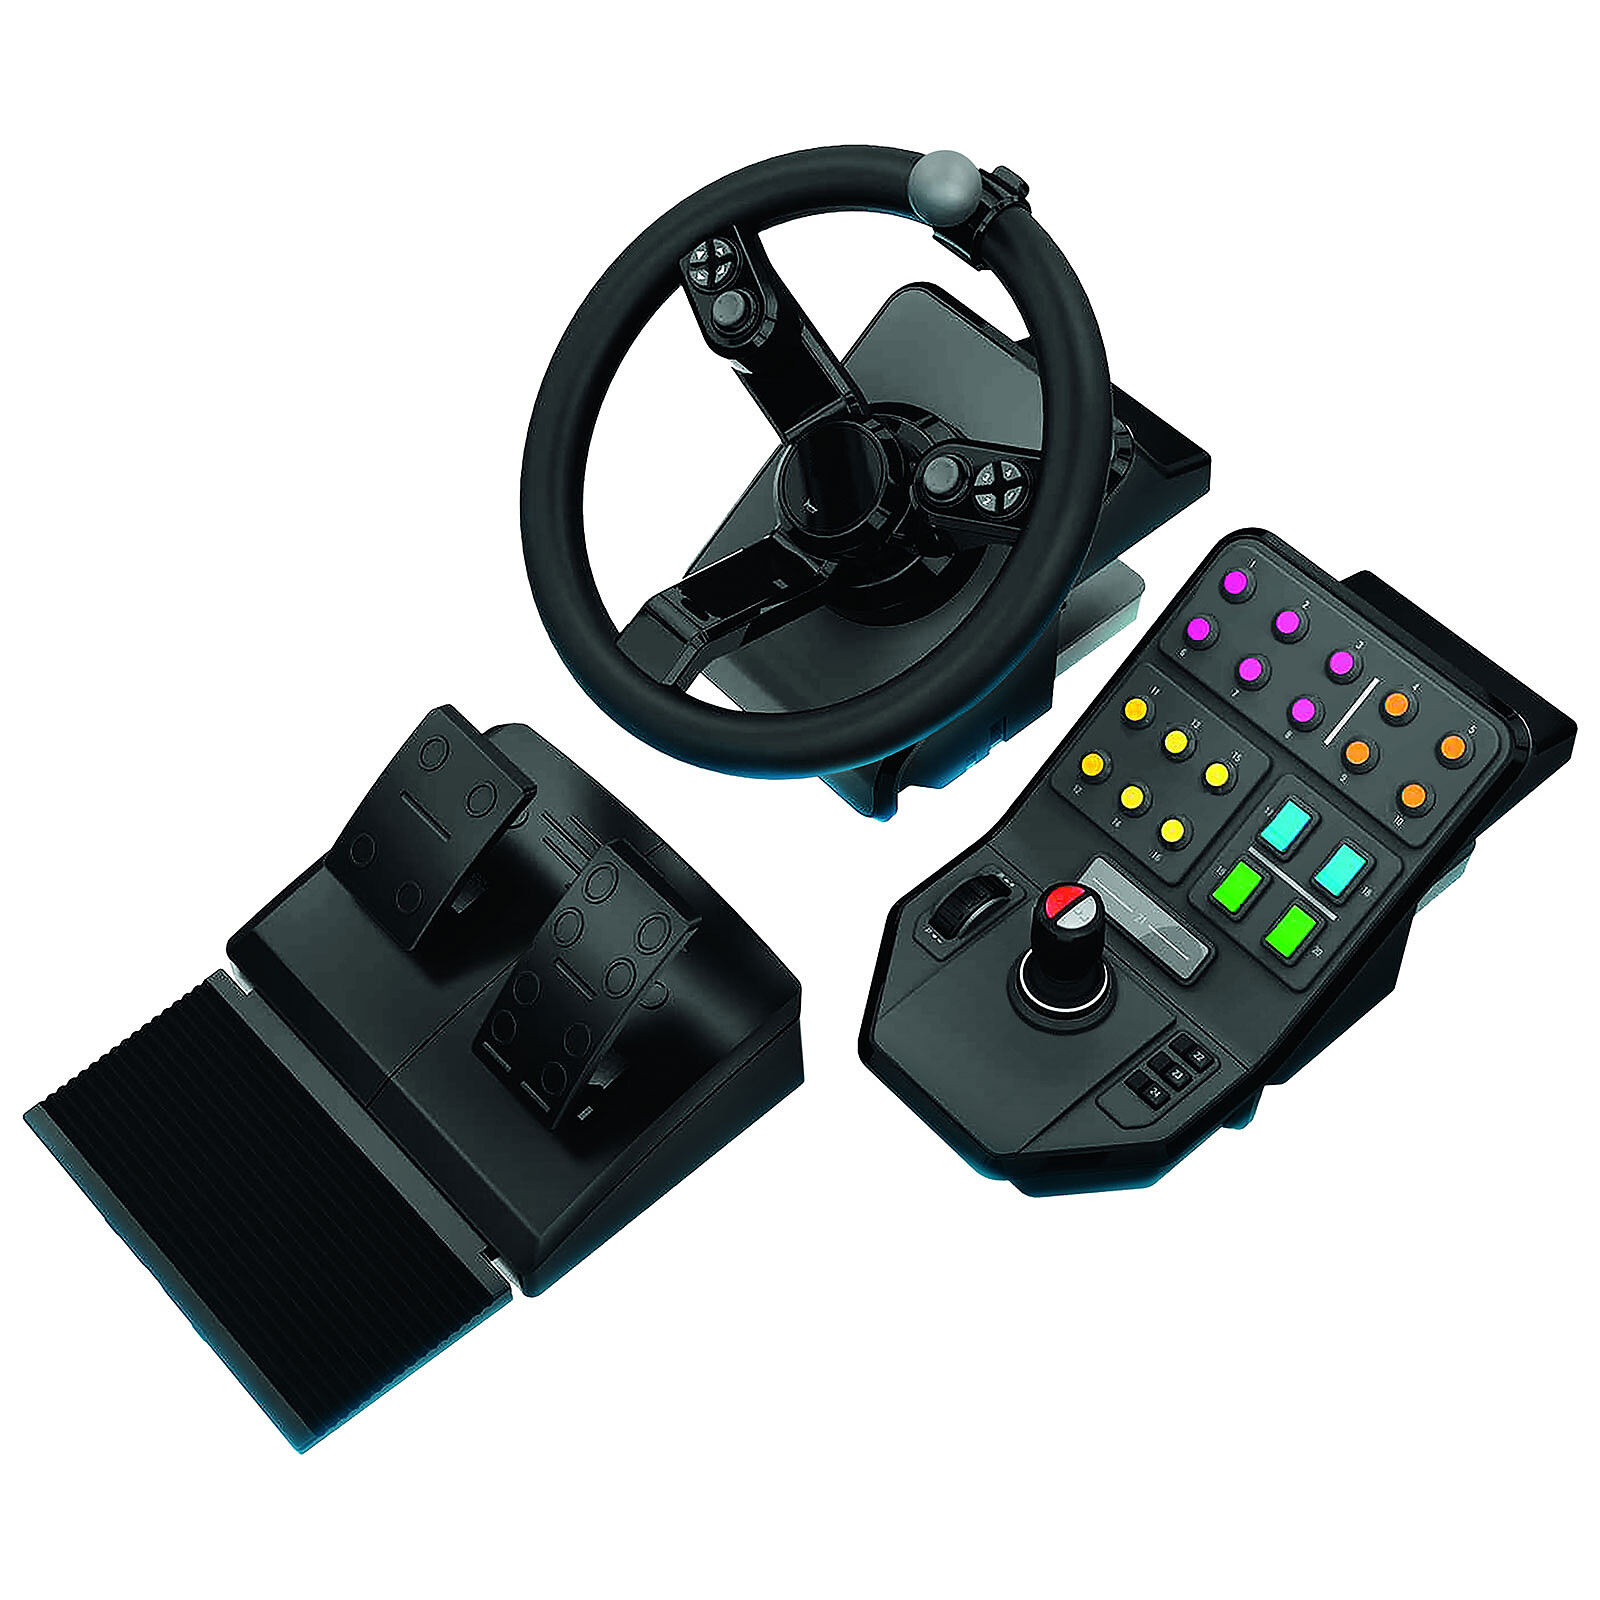 Le support de volant ultime en noir - adapté pour Logitech, Xbox